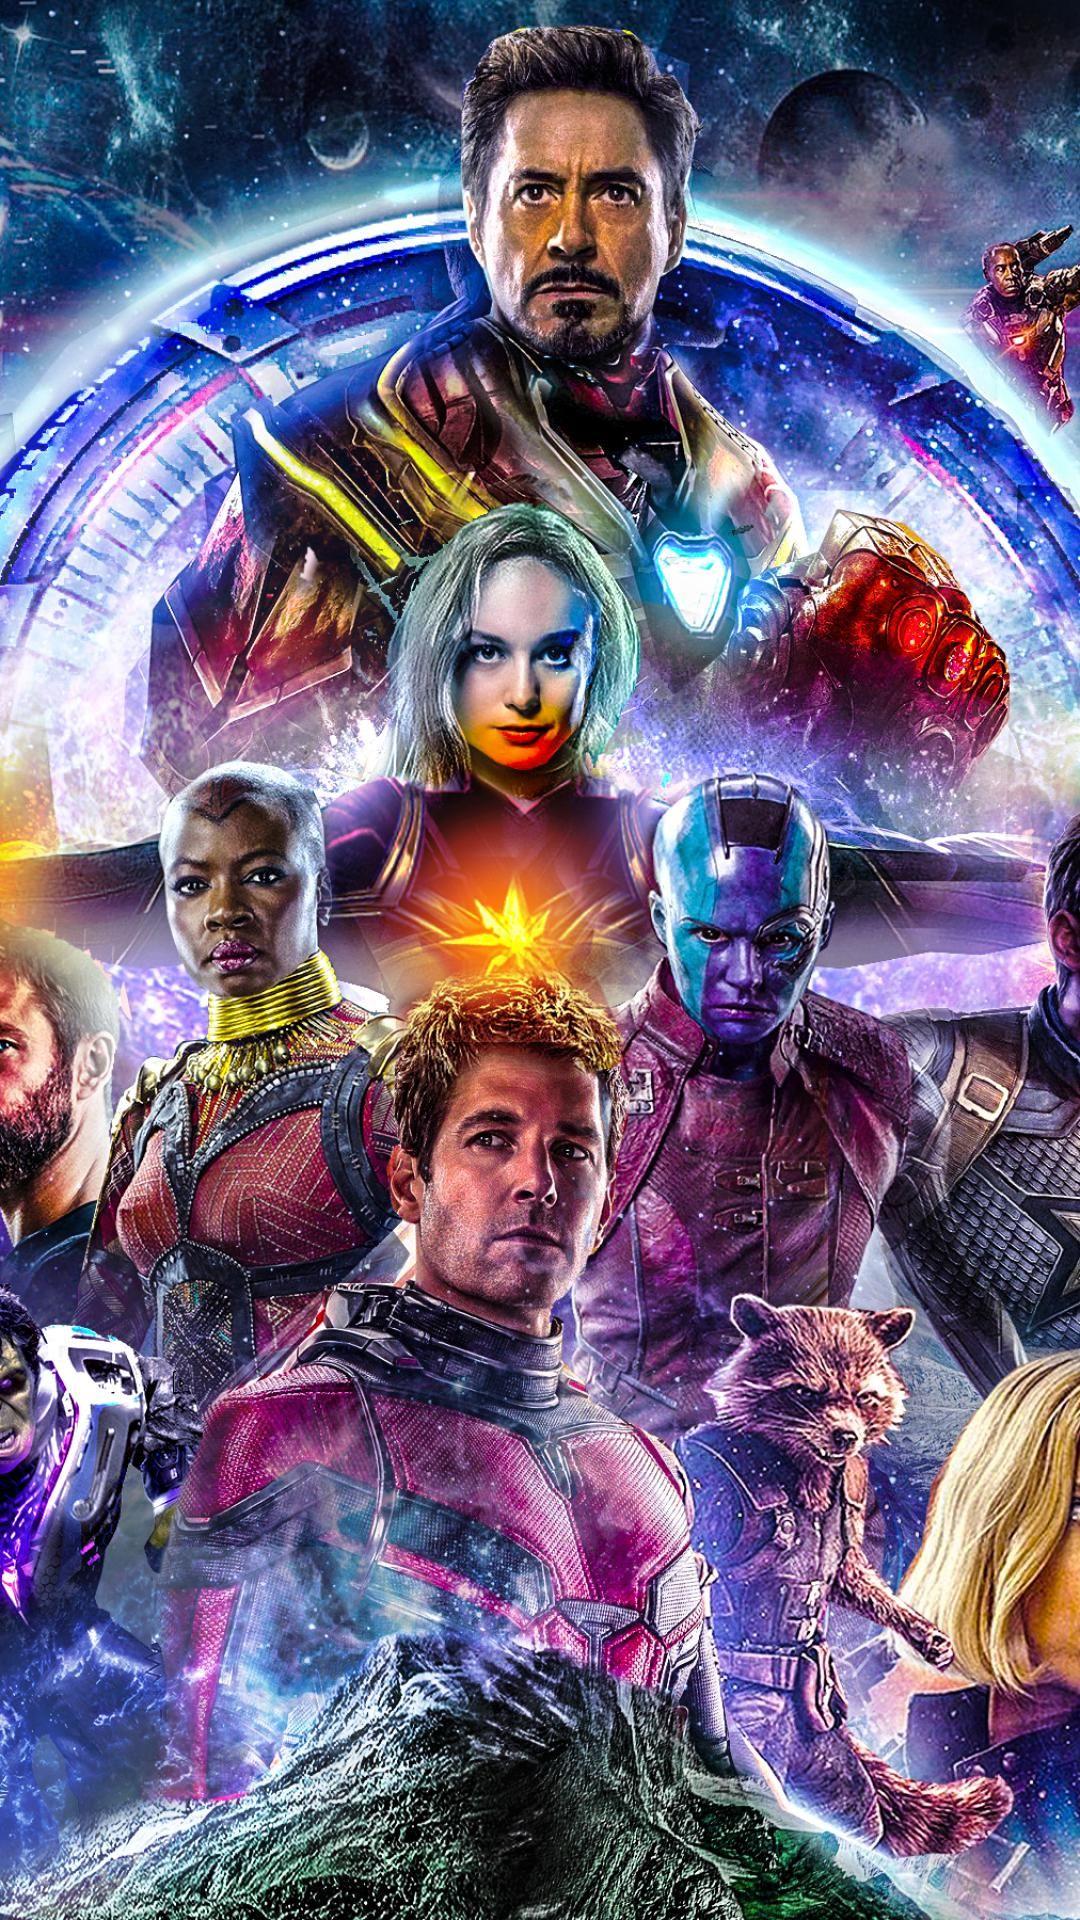 Avengers Endgame 2019 Wallpaper for mobile phones. Avengers